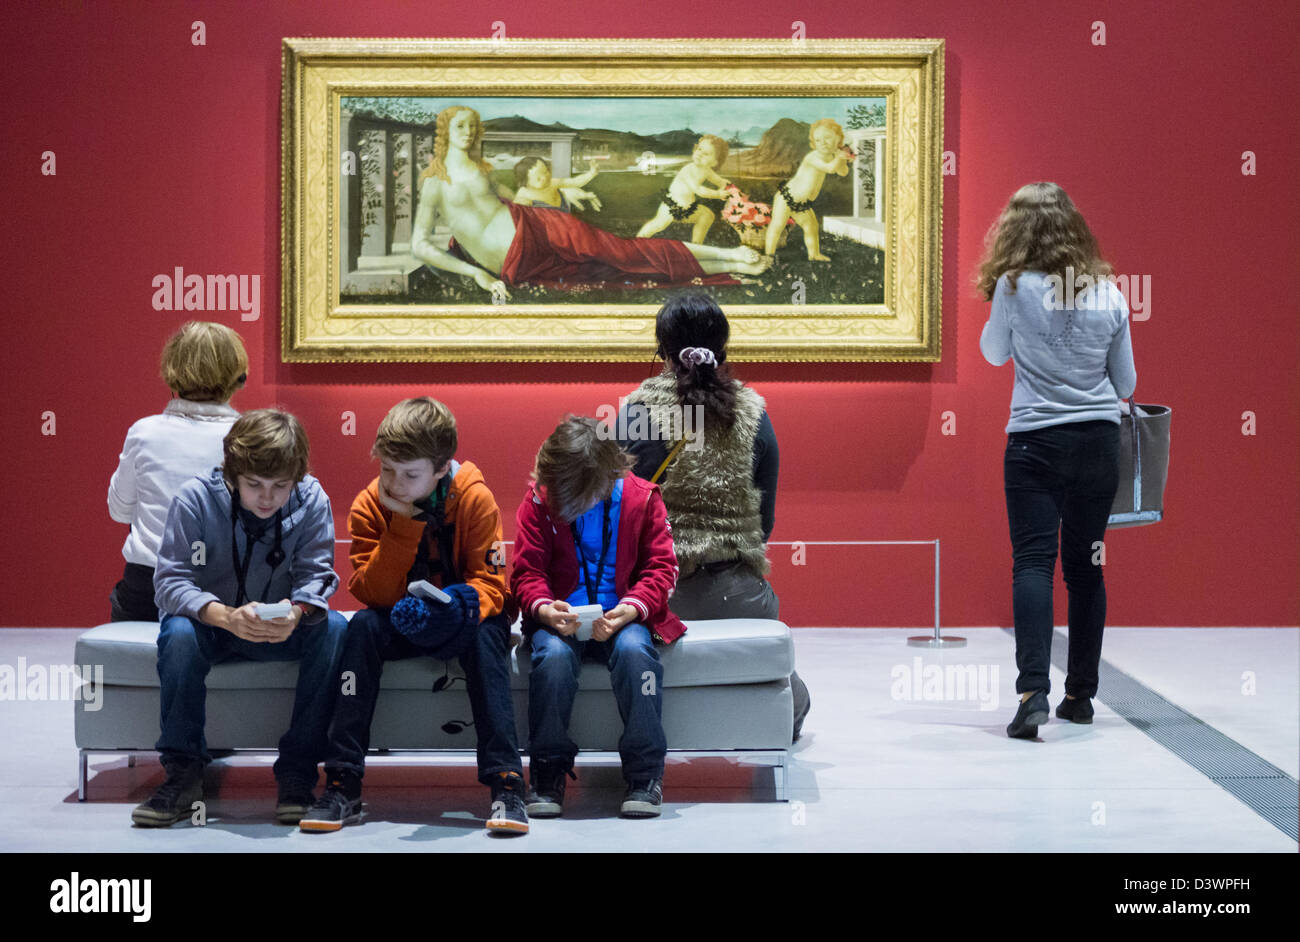 La gente ve la Vénus de Sandro Boticelli en el Louvre-Lens con aburrido niños / adolescentes desinteresados Foto de stock